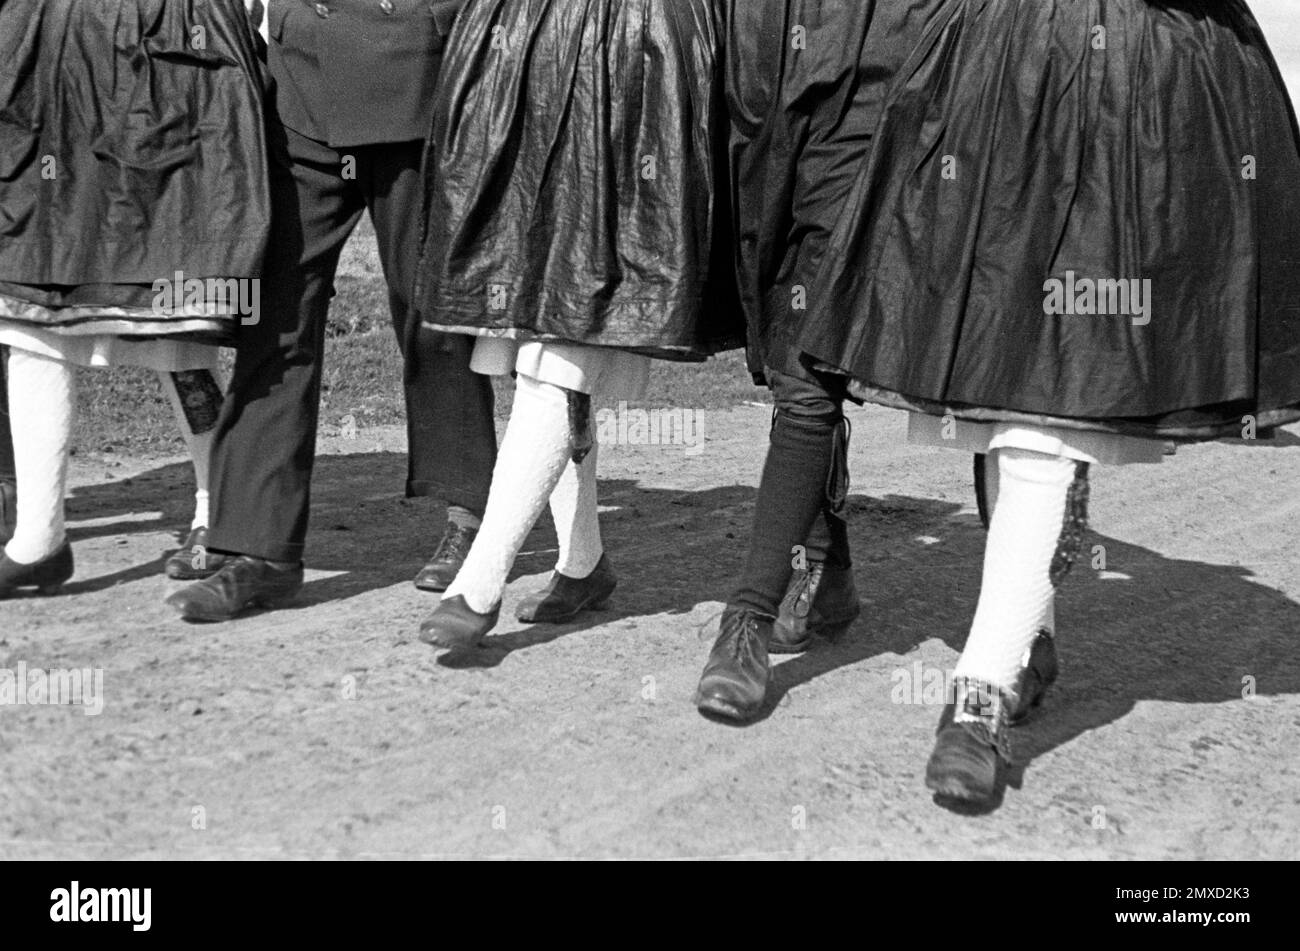 Junge Leute in Tracht laufen eine Landstraße im Schwalm-Eder-Kreis in Hessen entlang, 1938. Junge Menschen in traditioneller Kleidung auf einer Landstraße in der Region Schwalm-Eder in Hessen, 1938. Stockfoto